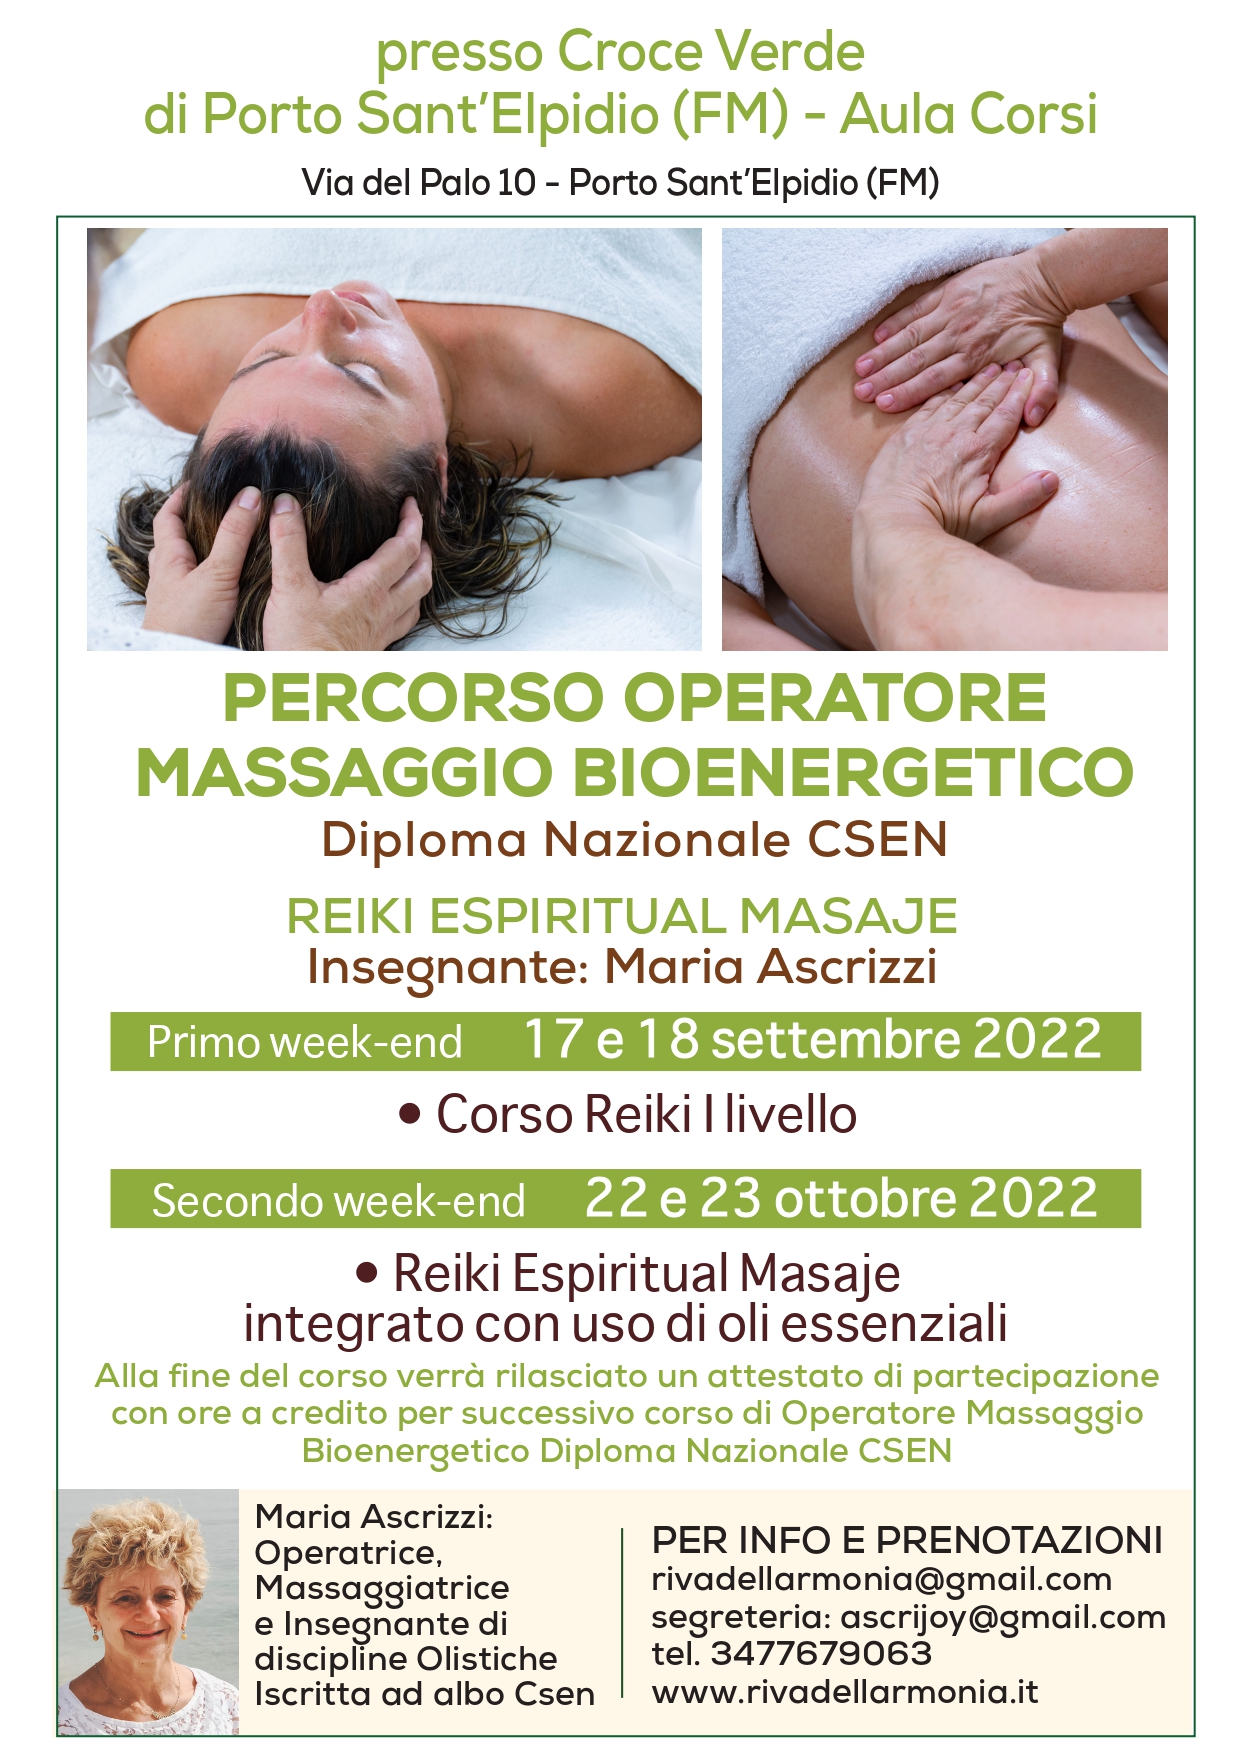 massaggio bioenergetico_fermo_page-0001